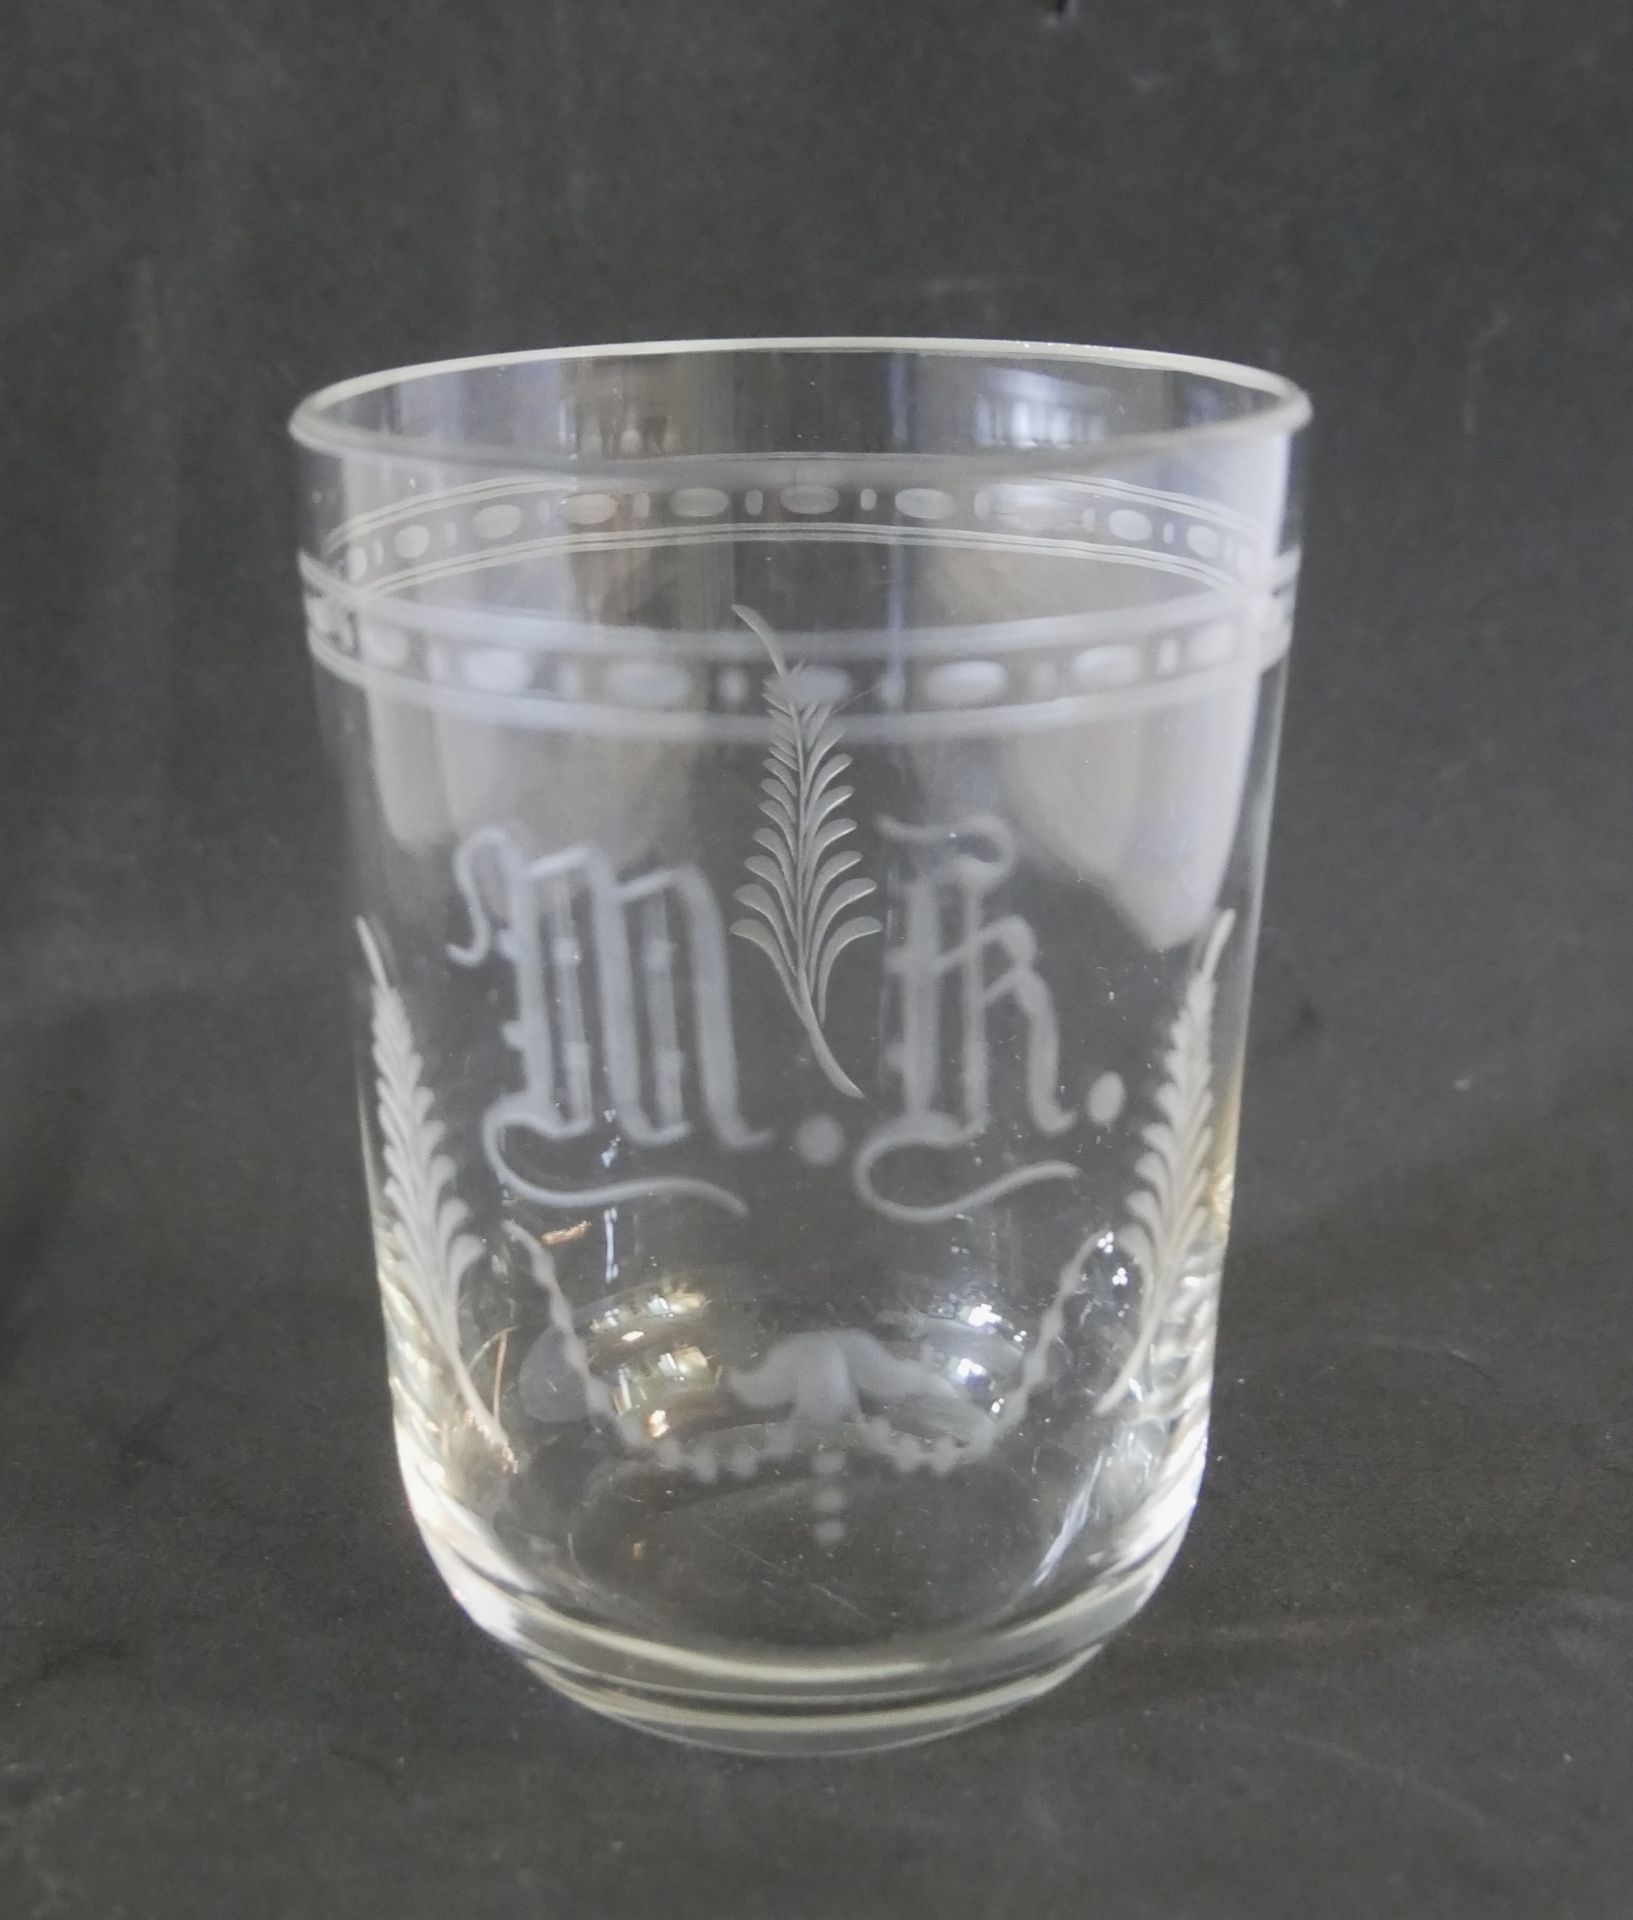 Jugendstil Trinkglas mit Monogram und Gravur. Höhe ca. 10 cm, Durchmesser ca. 7,3 cm